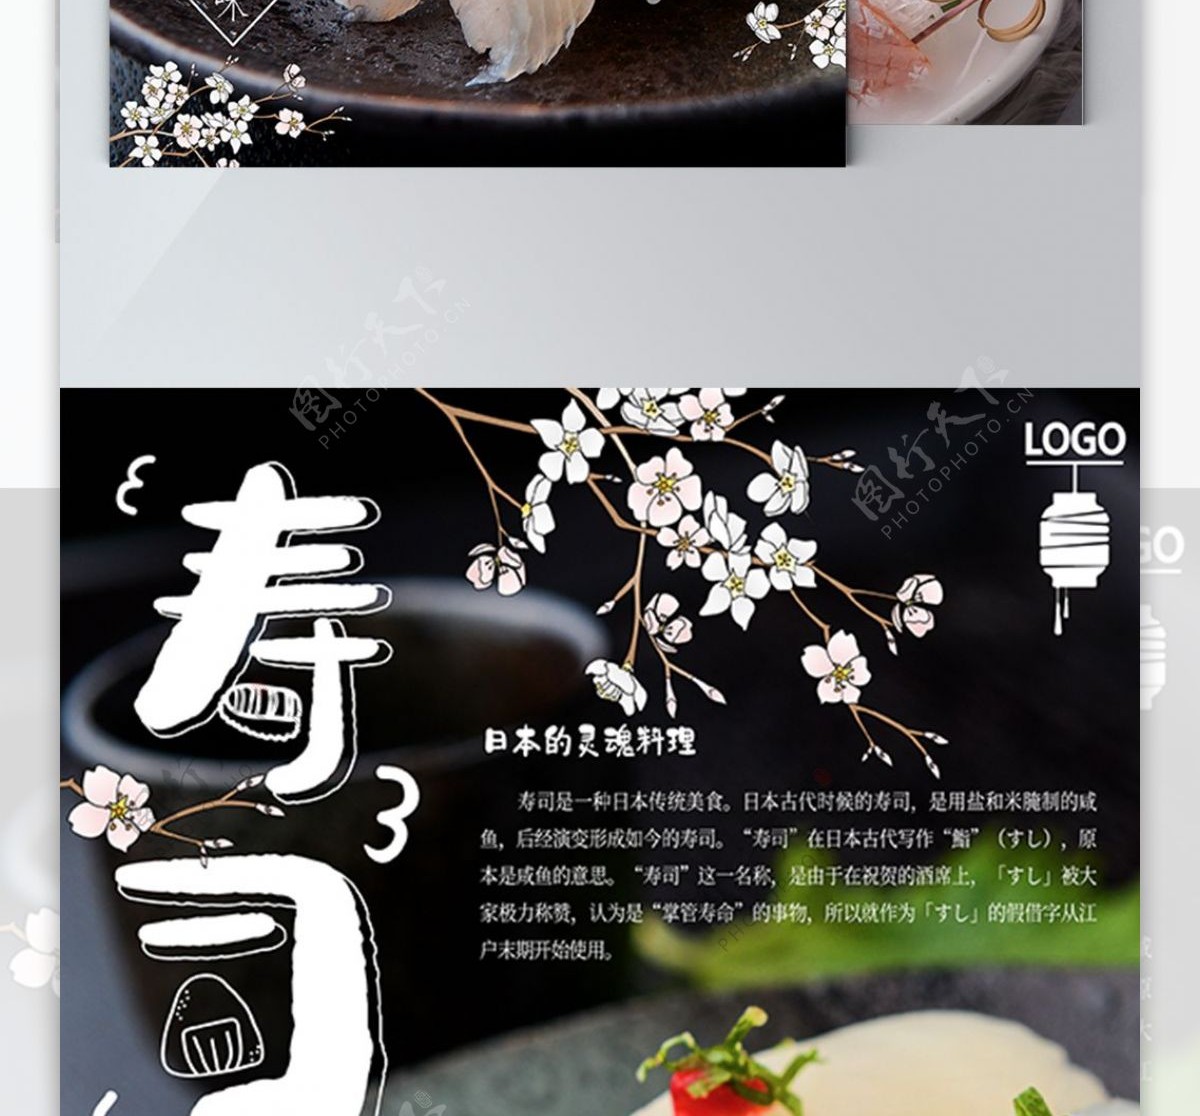 日式小清新寿司料理主题宣传单